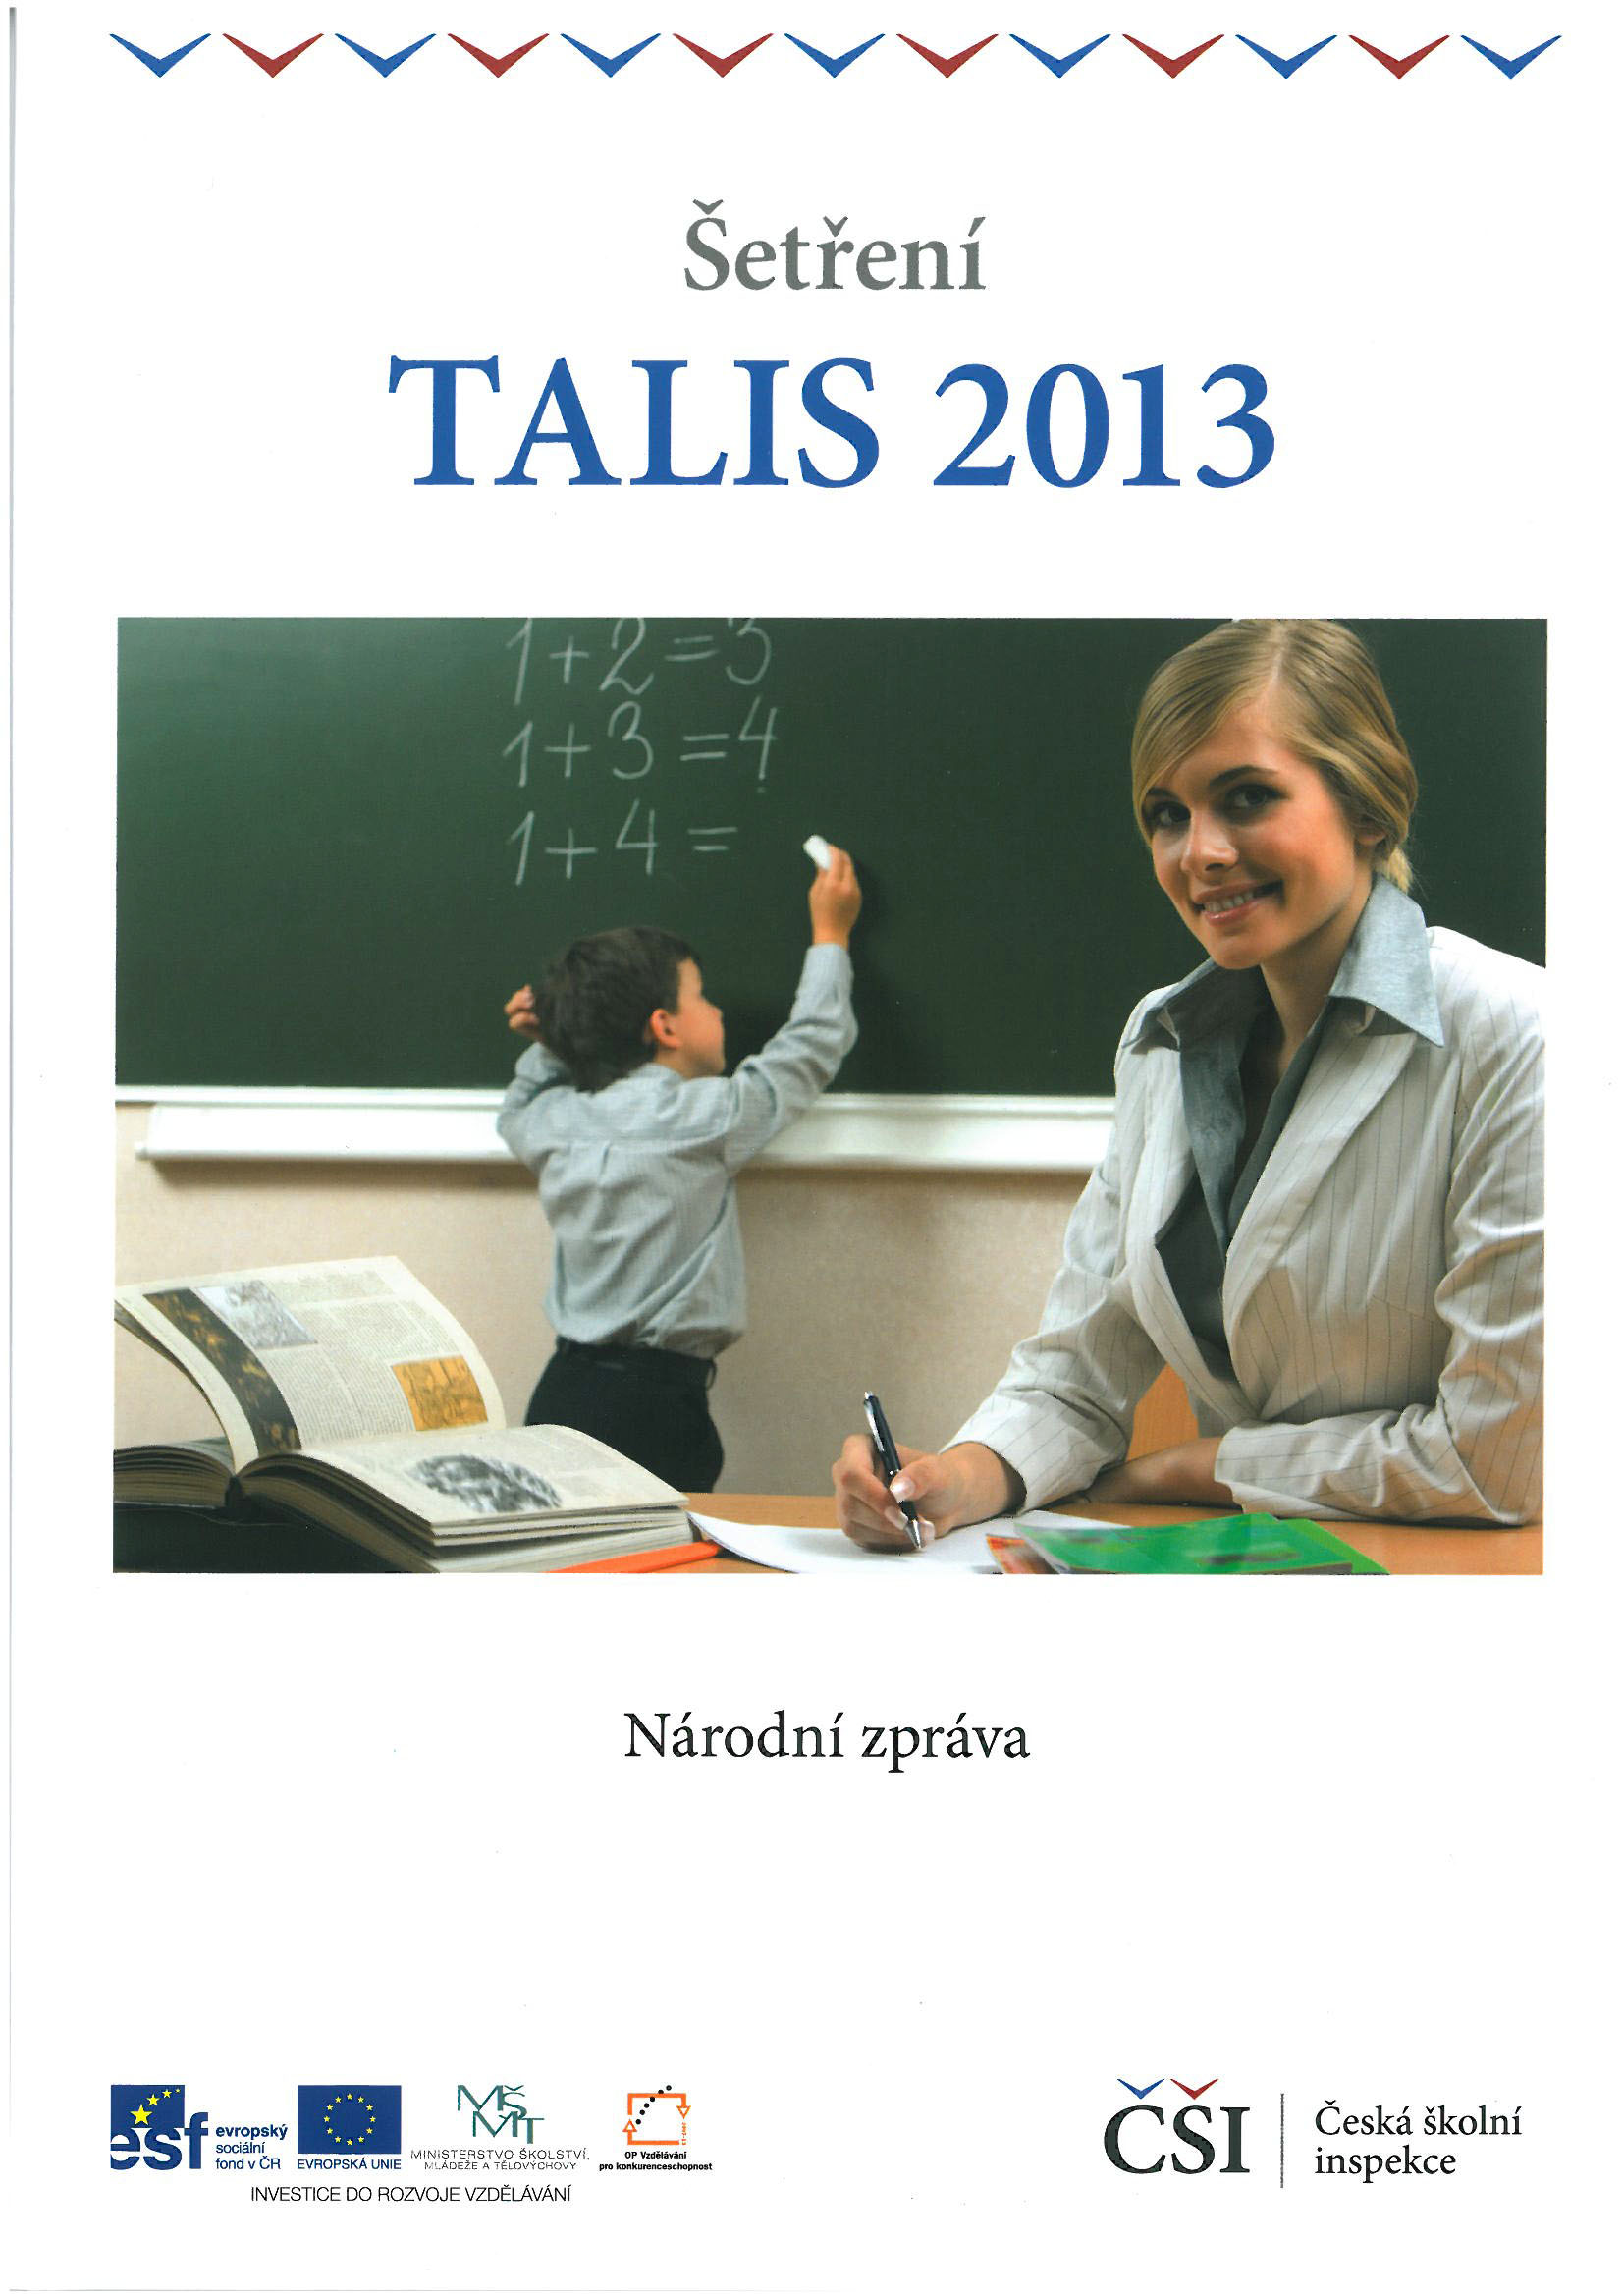 Národní zpráva TALIS 2013